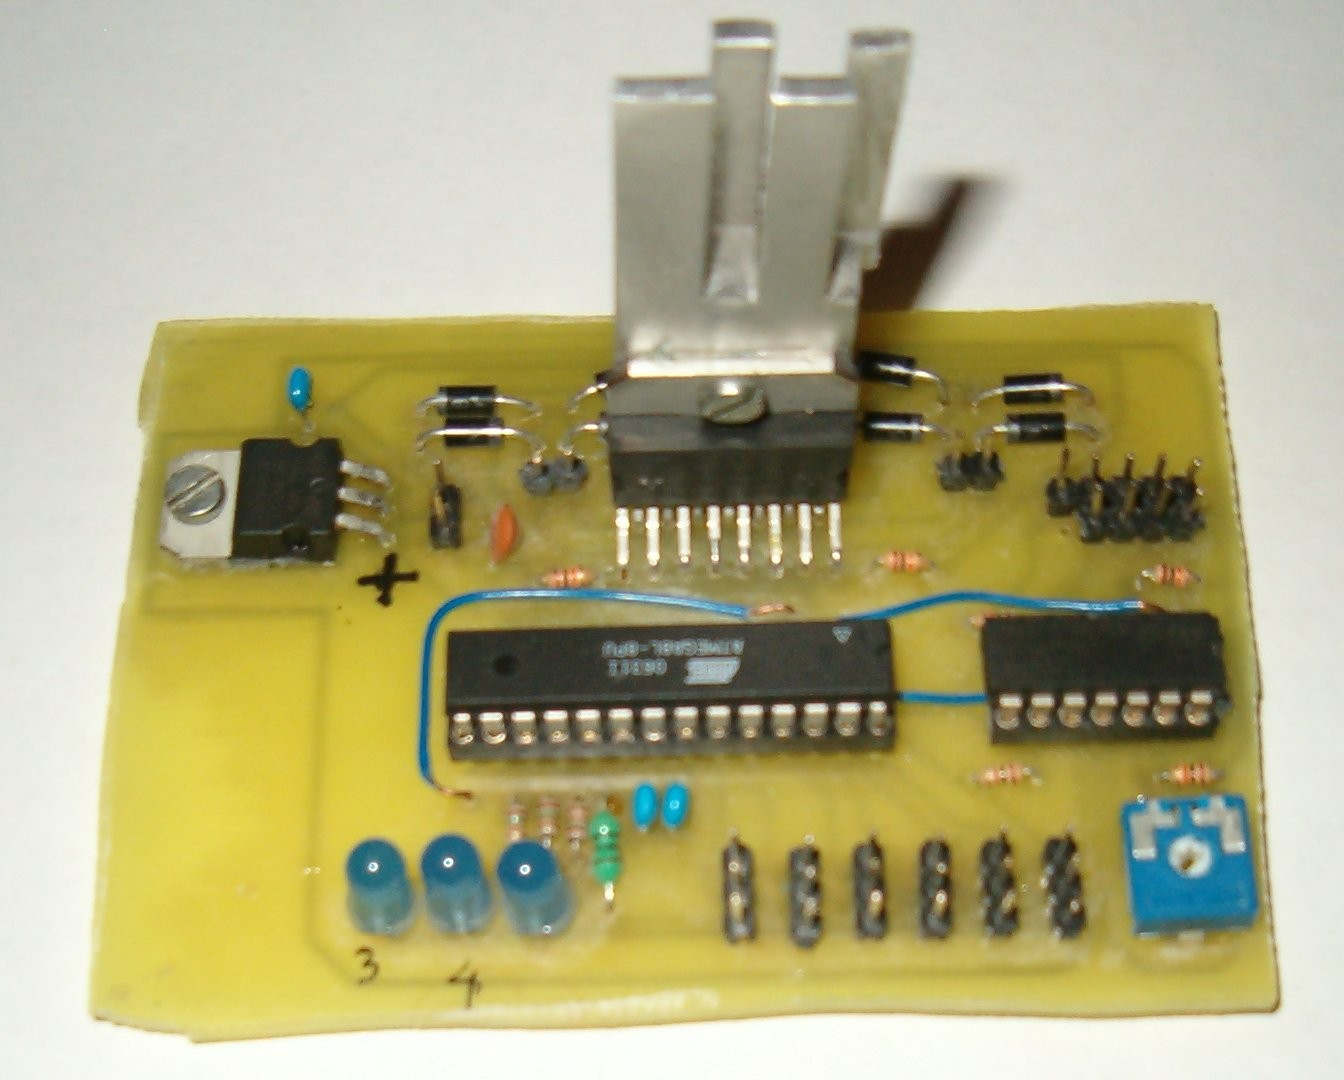 3. Elektronika Schemat układu elektronicznego powstał w darmowej wersji programu Eagle. Układ został wykonany na jednostronnym laminacie o wymiarach 9,5 na 6,5 cm.